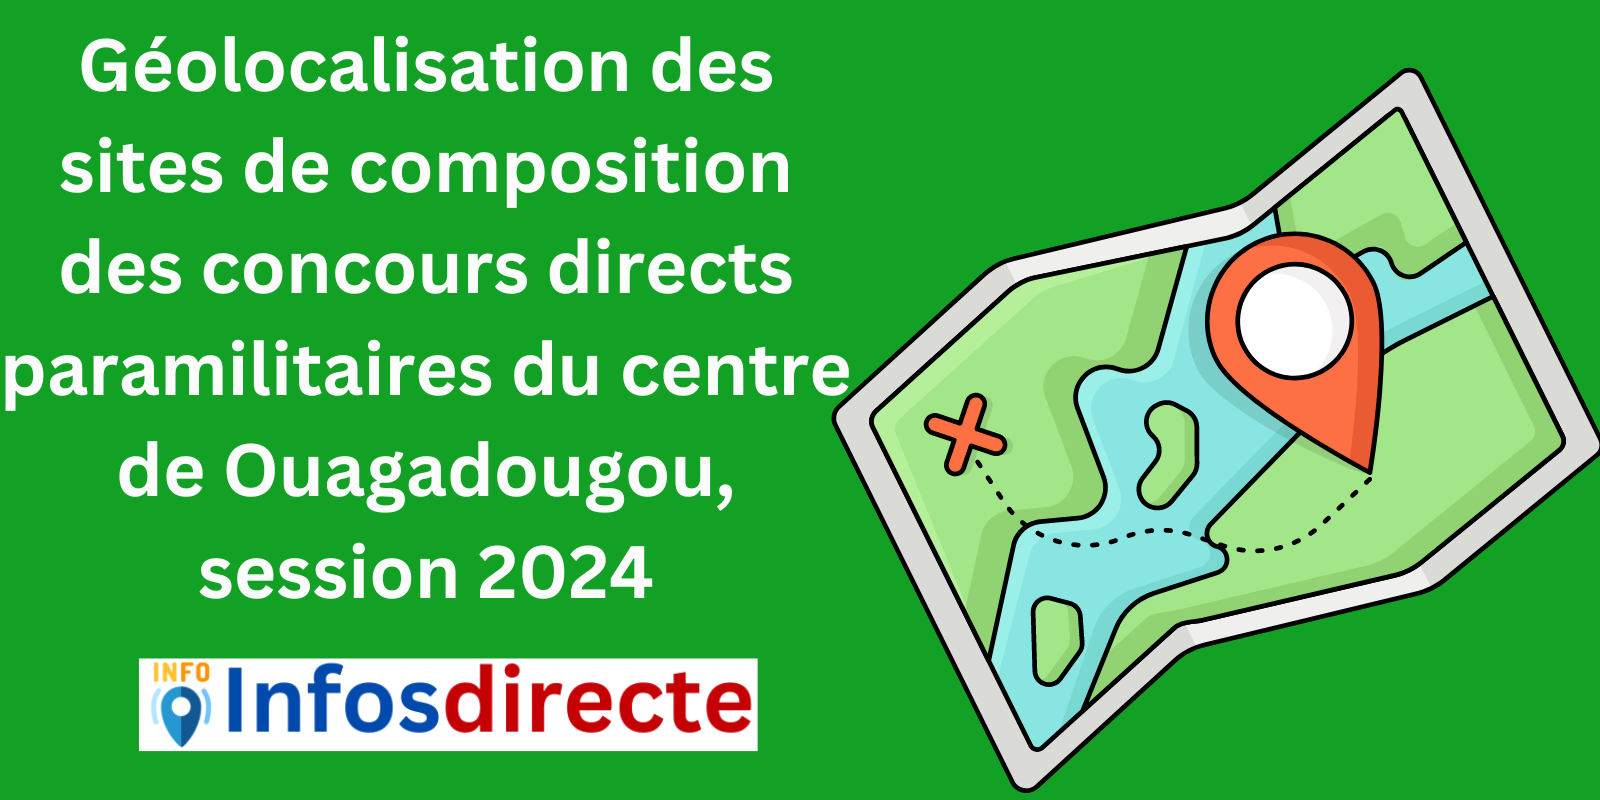 Géolocalisation des sites de composition des concours directs paramilitaires du centre de Ouagadougou, session 2024